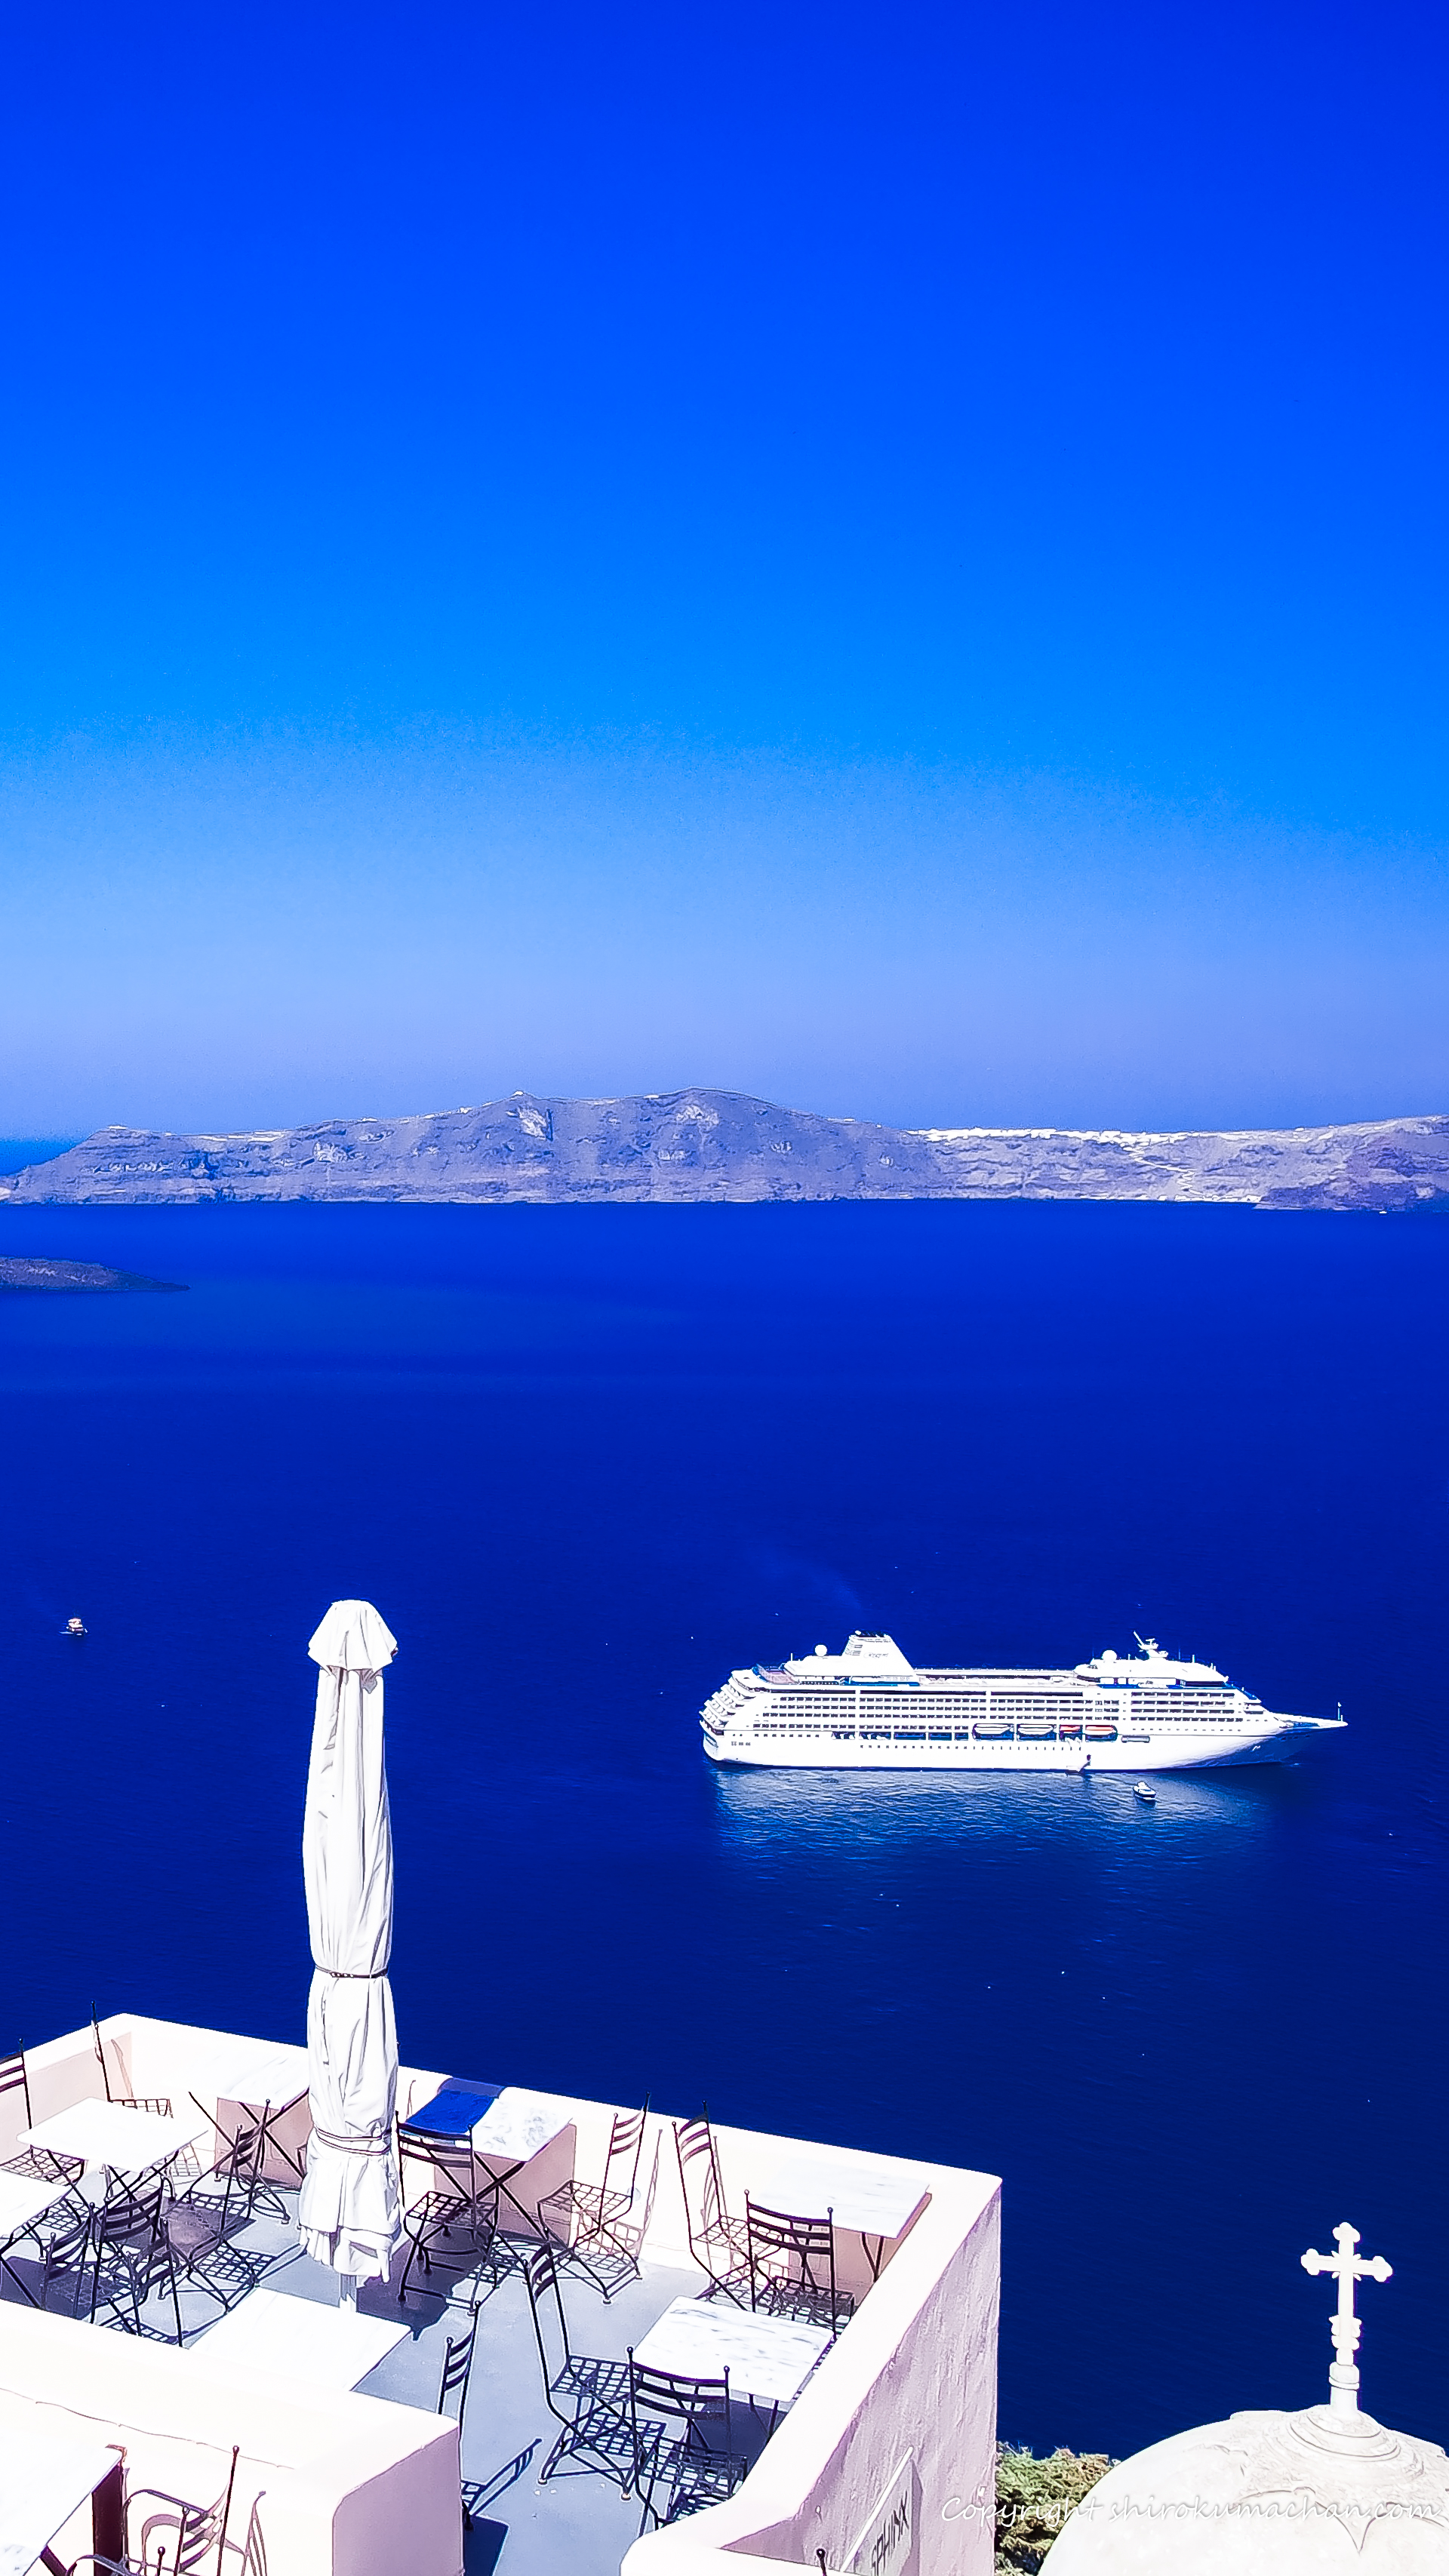 Santorini Greece 4K UHD Wallpaper for Smart phone